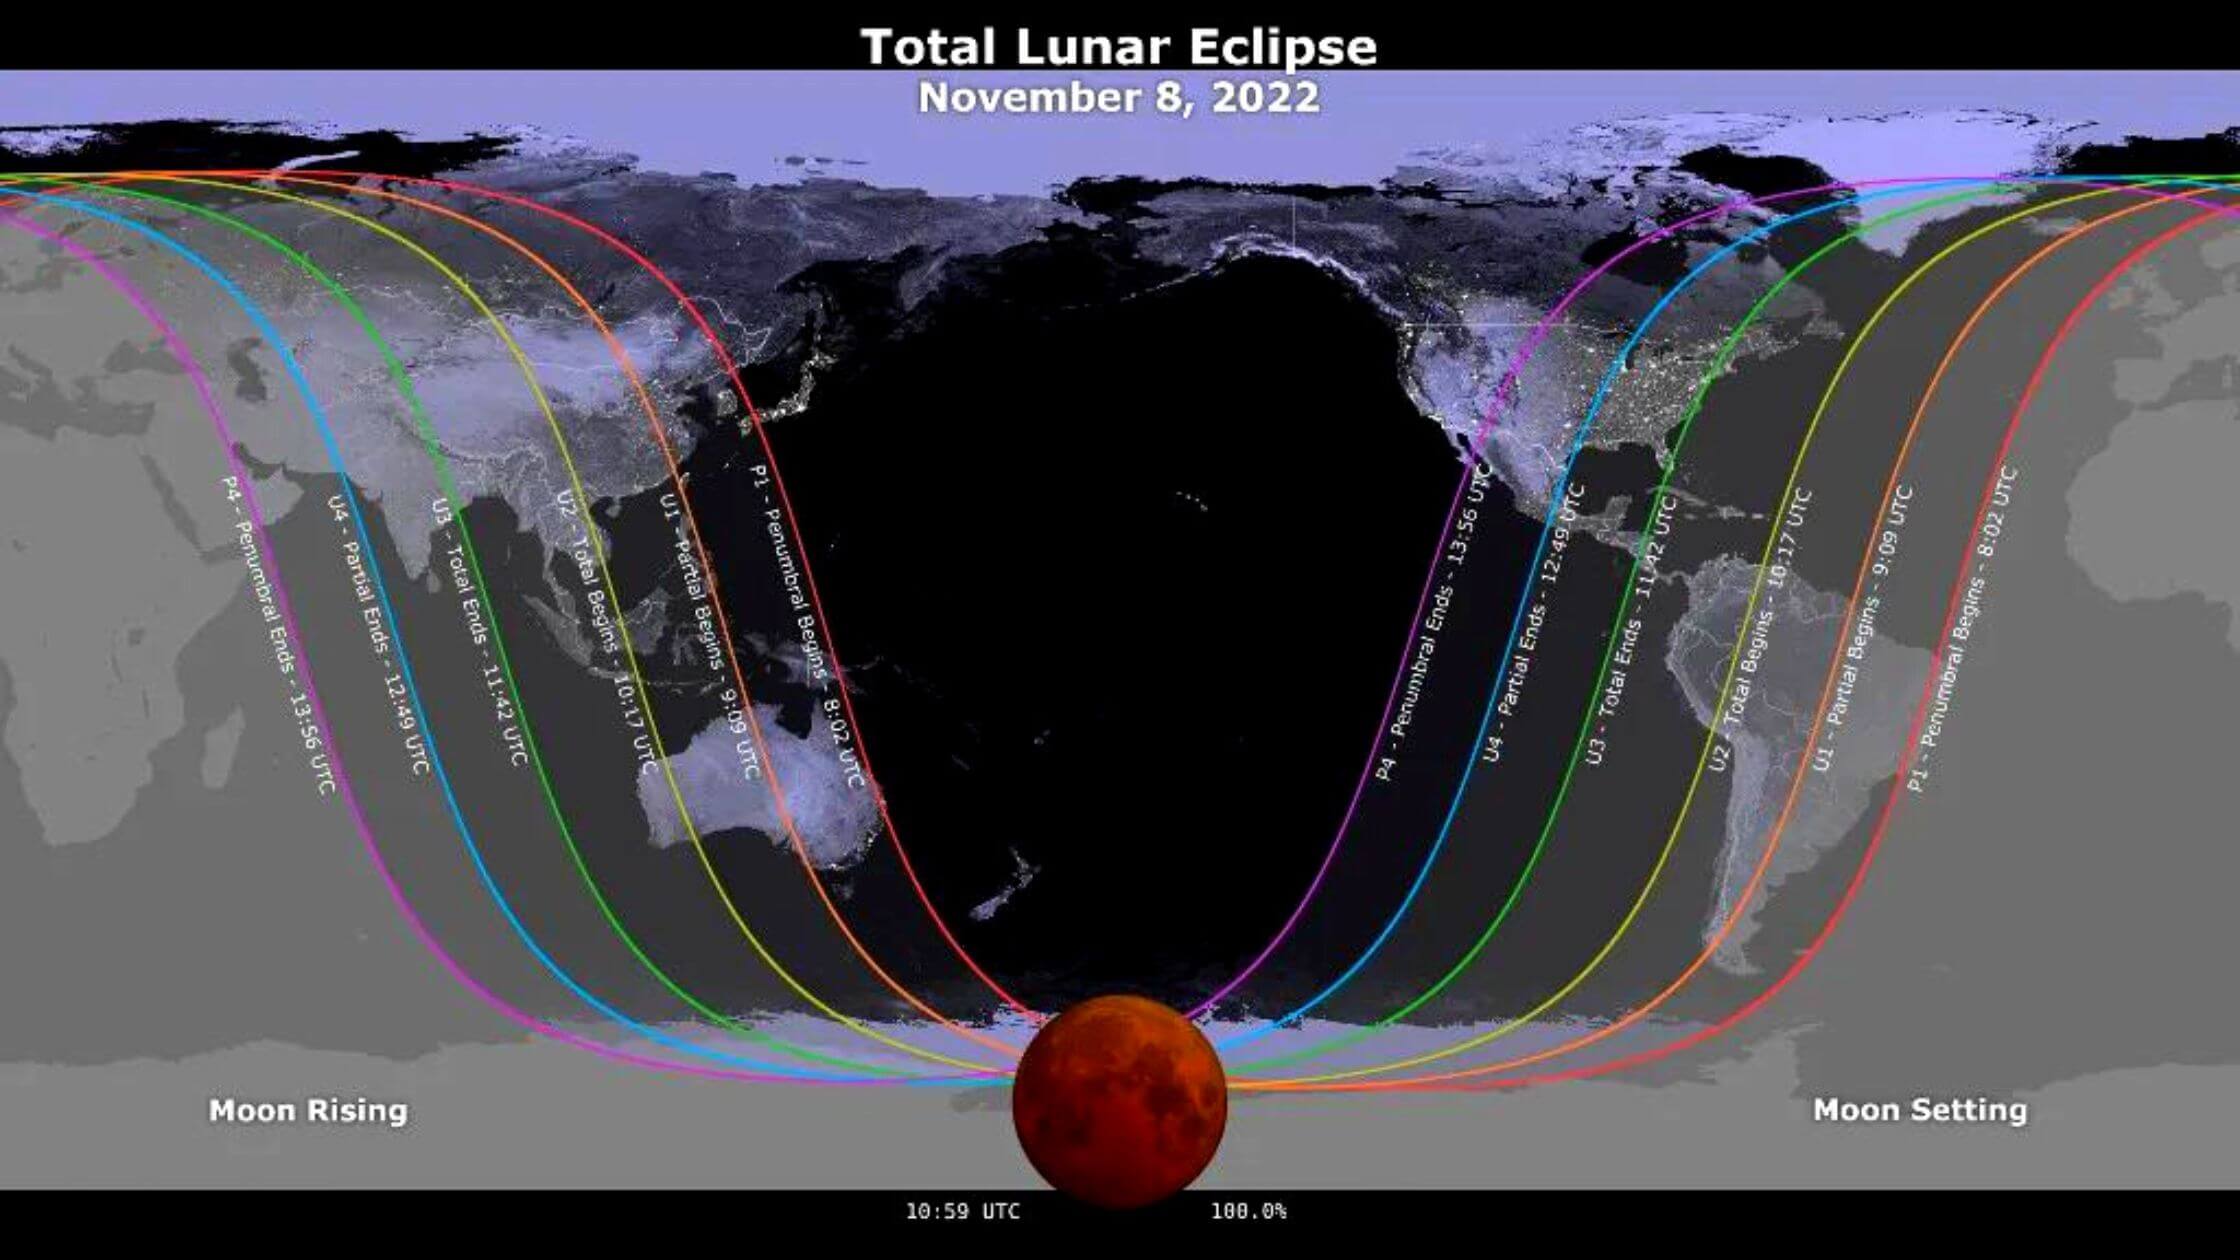 Luna de sangre del 8 de noviembre: vea el eclipse lunar total en directo